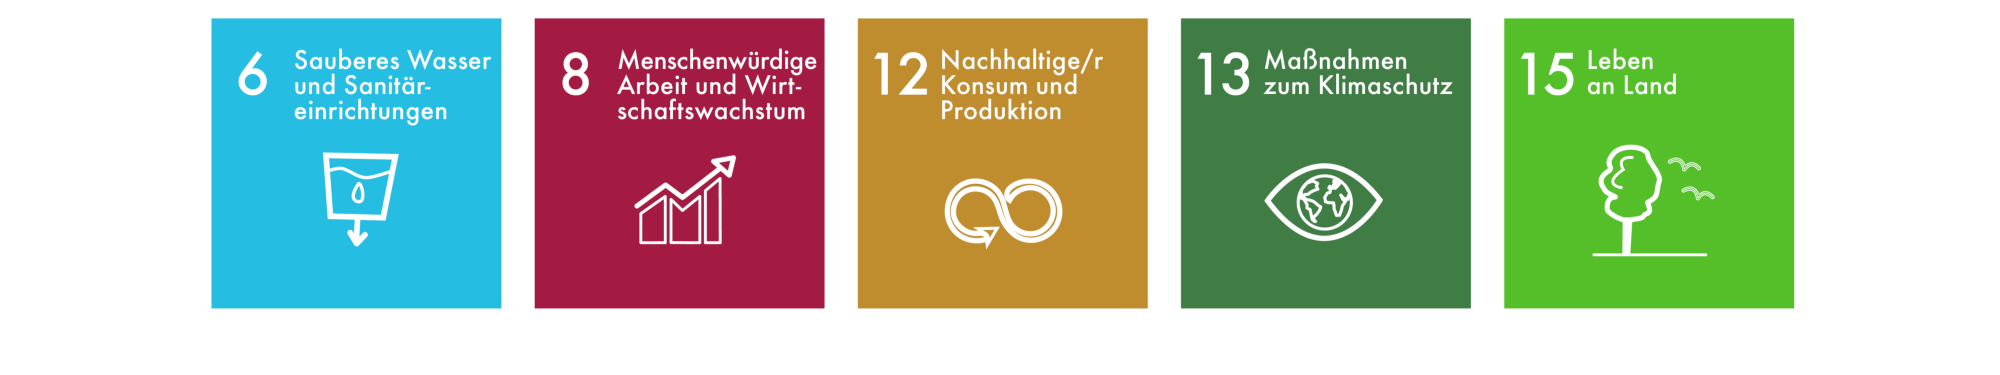 Sustainable Development Goals DE